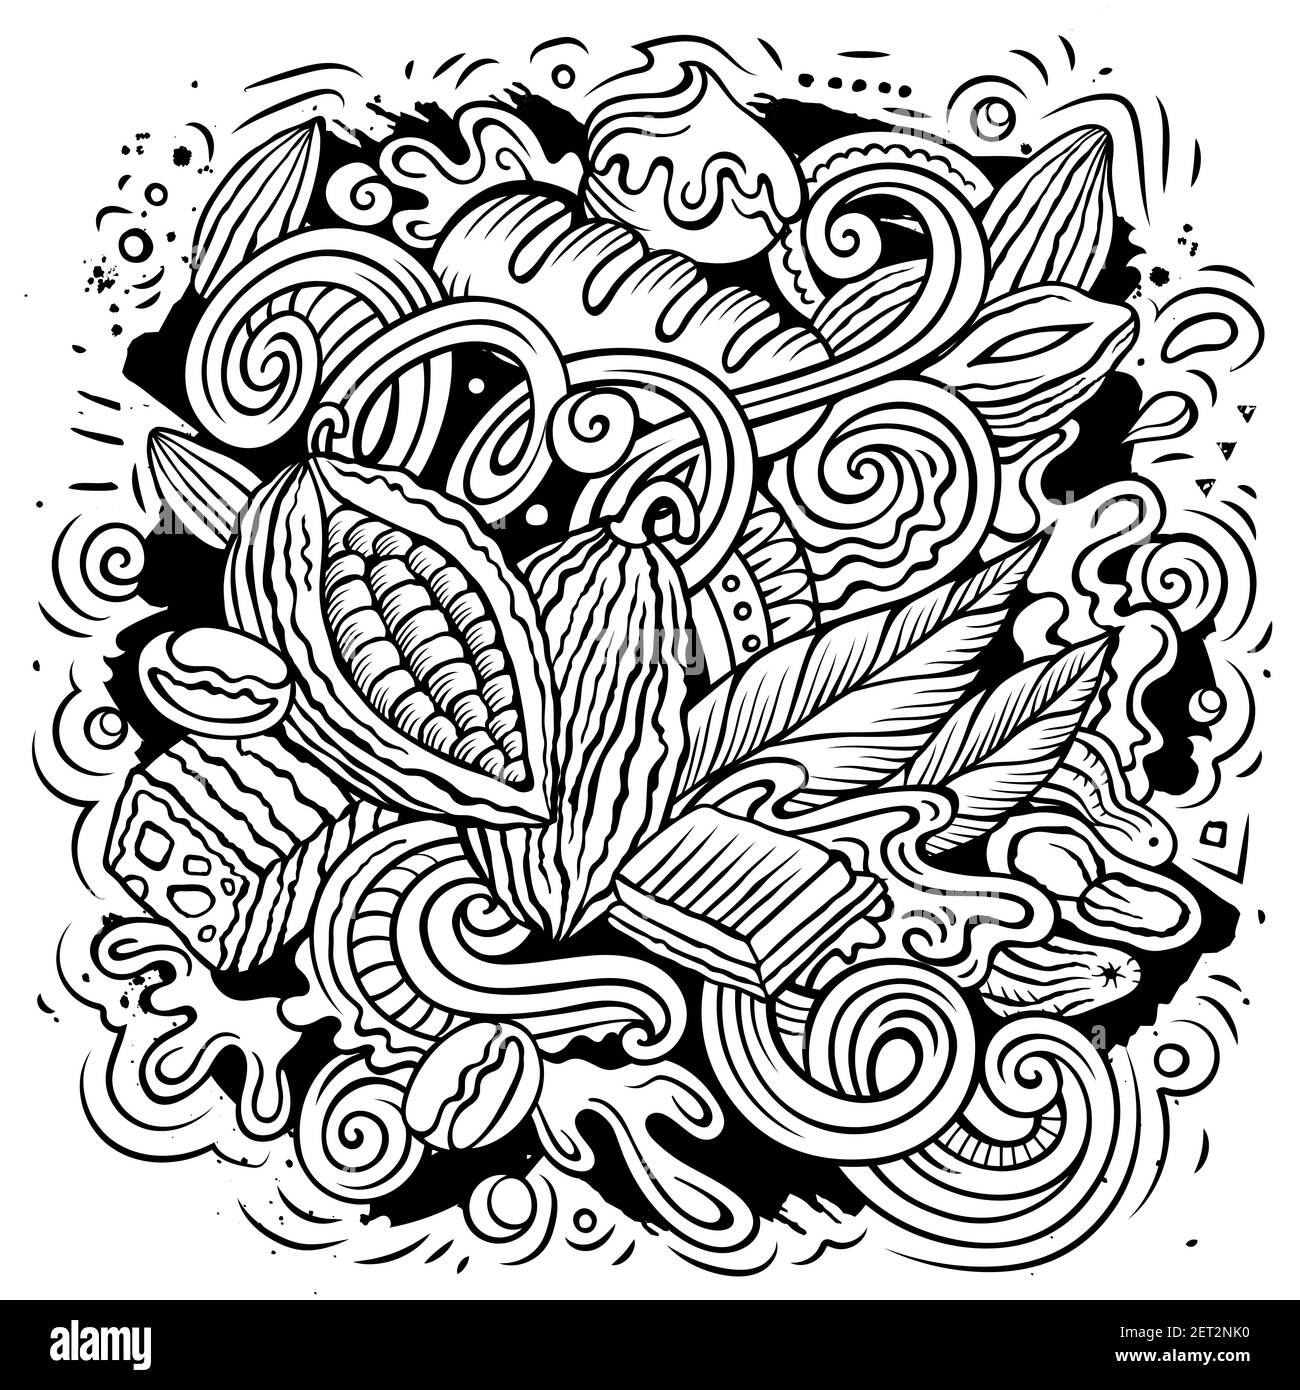 Illustrazione di doodles vettoriali disegnati a mano di cioccolato. Poster Choco. Elementi dolci e oggetti sfondo cartoon. Immagine divertente dell'arte di linea Illustrazione Vettoriale